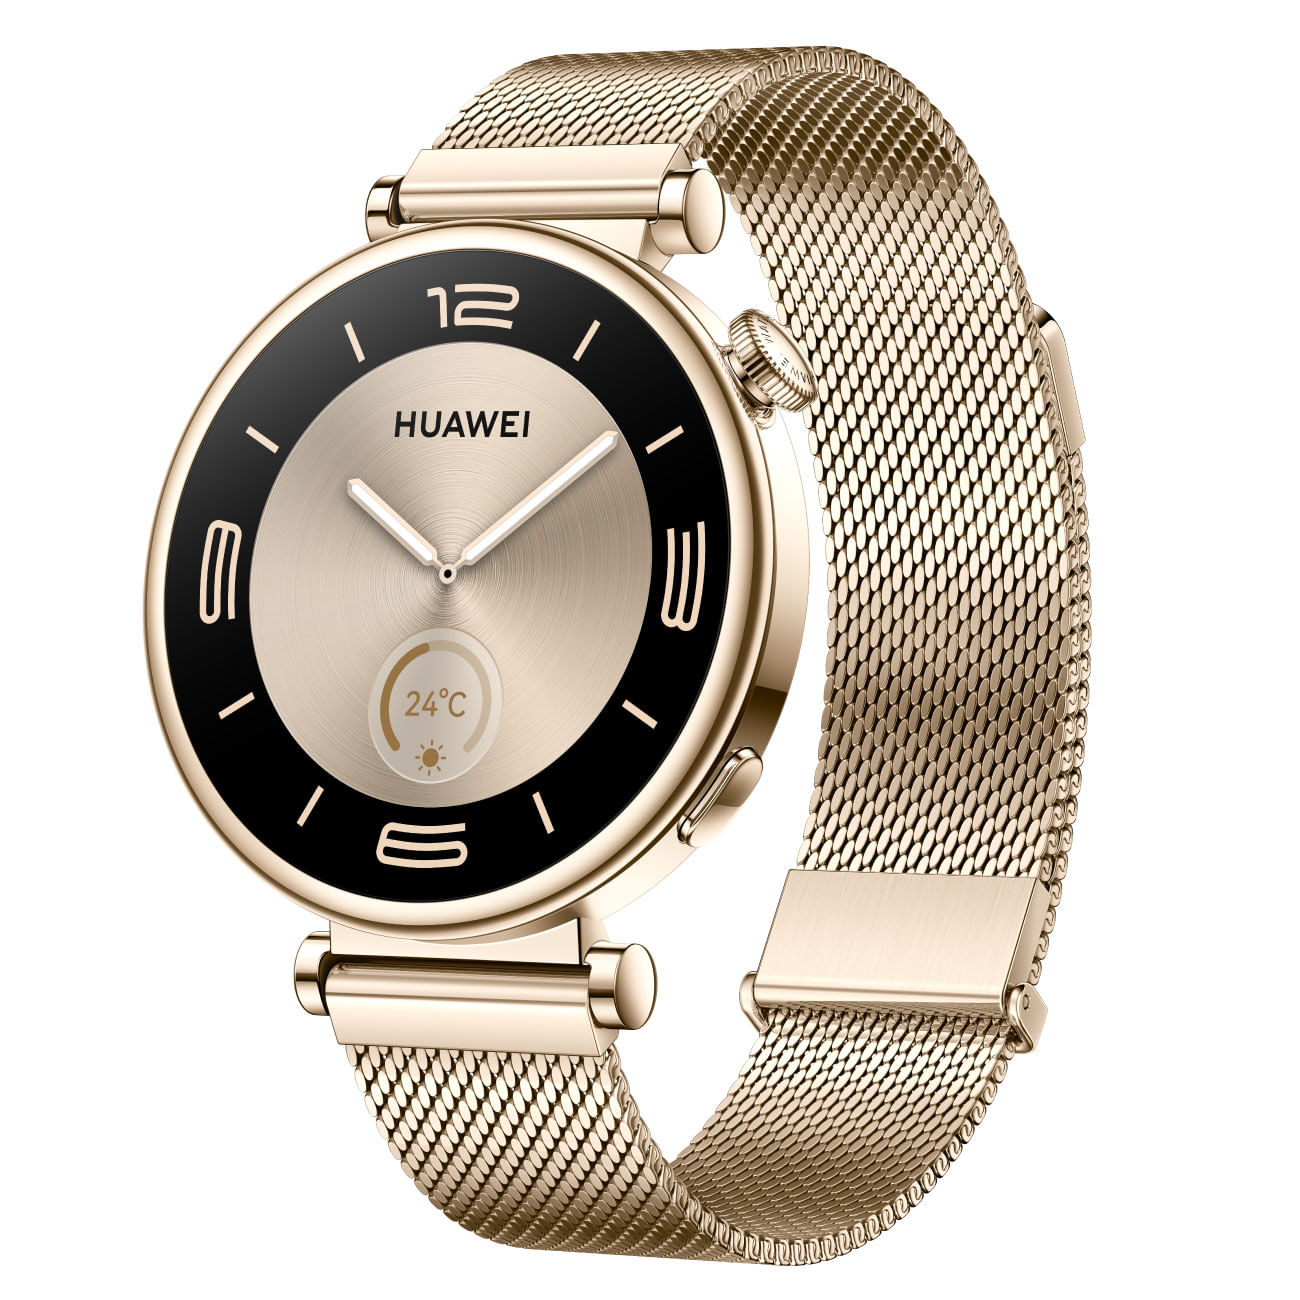 Smartwatch HUAWEI WATCH GT 4 41mm con Correa Milanés Dorado